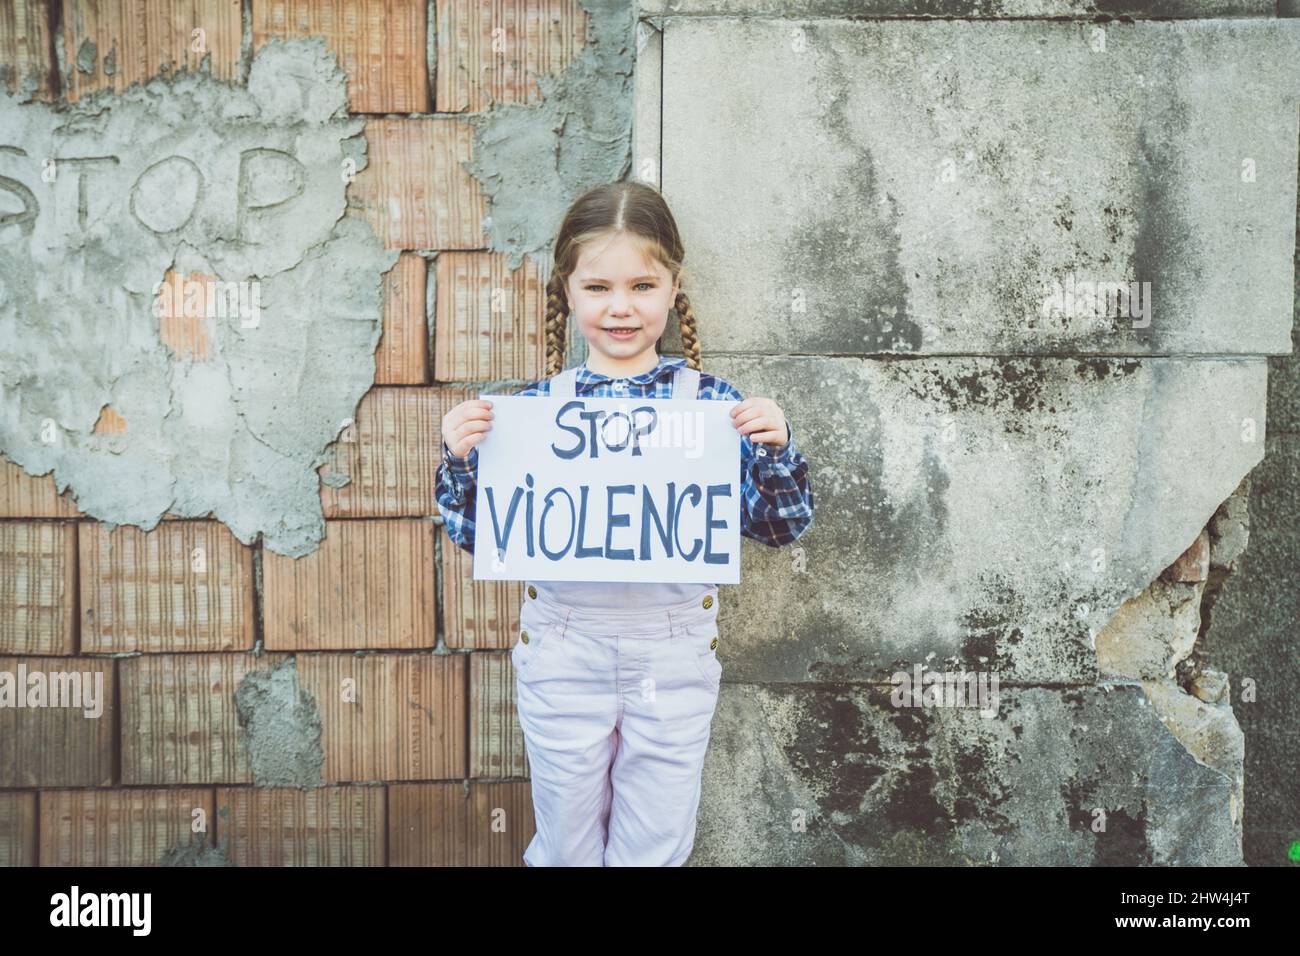 Kindermädchen mit einem Plakat mit schriftlicher BEENDIGUNG DER GEWALT zur Unterstützung des Friedens. Konzept des 'No war' in der Ukraine und in der Welt. Russischer Konflikt in der Unterstützung Stockfoto